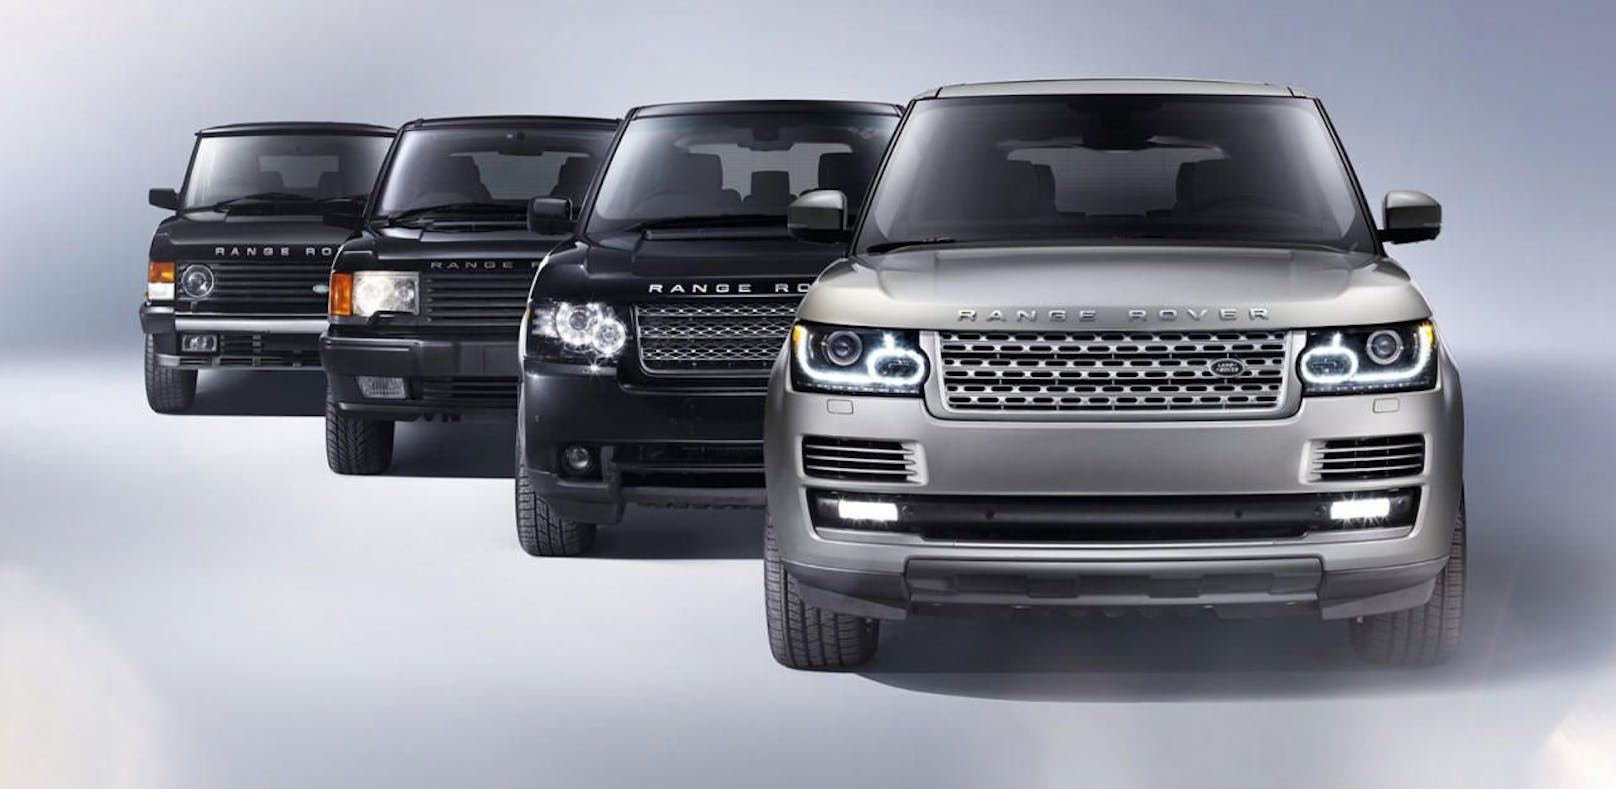 Der Range Rover feiert seinen 50. Geburtstag